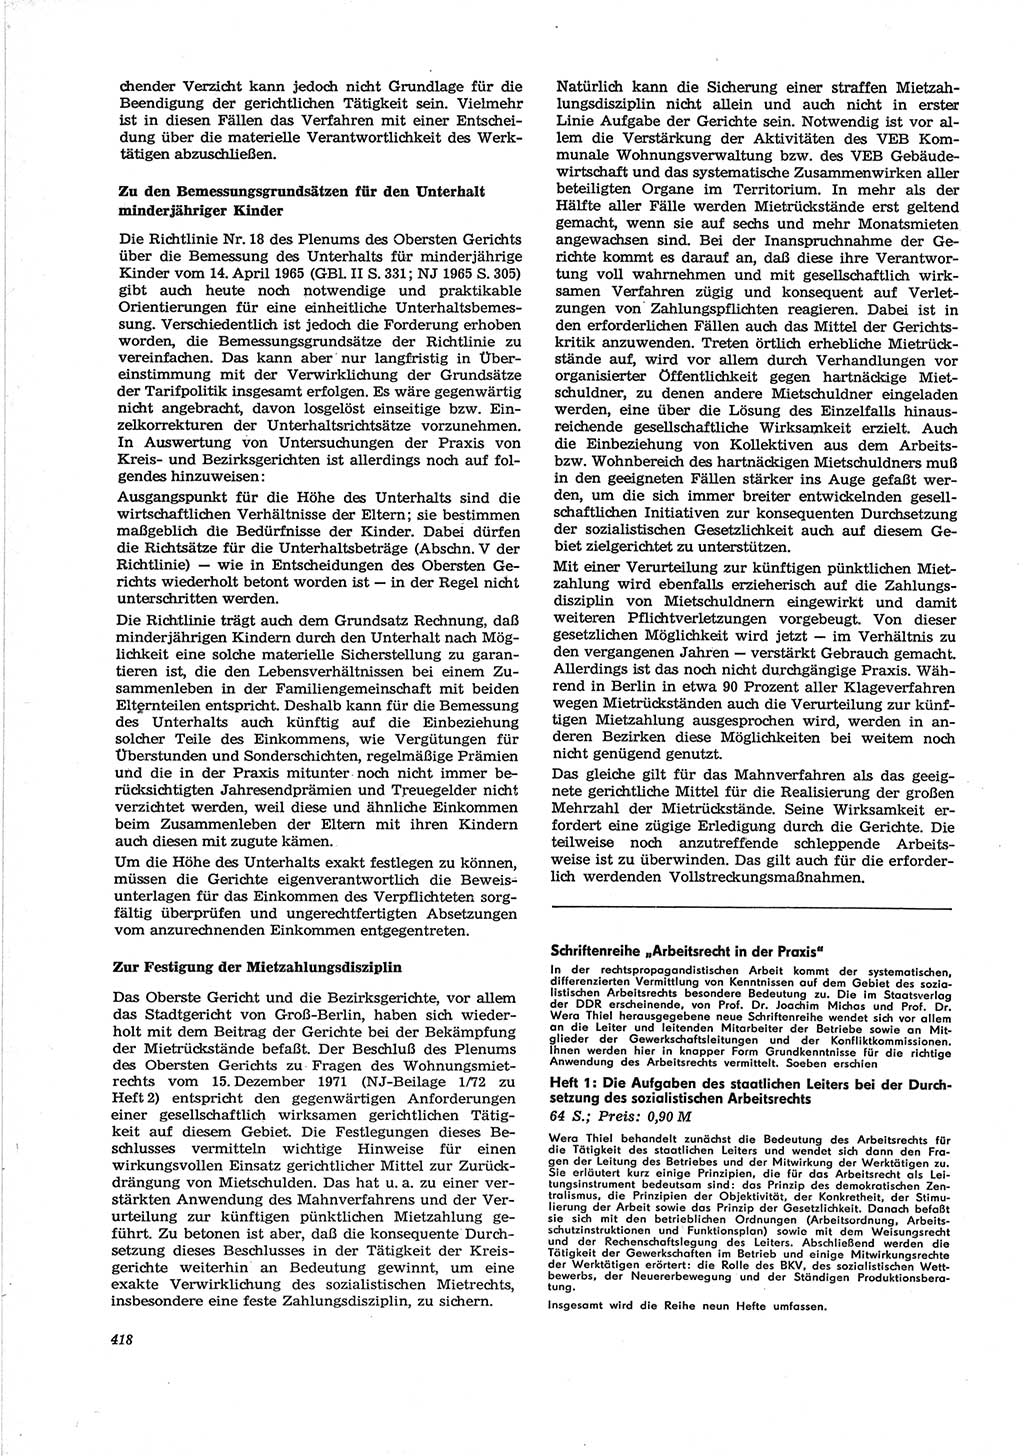 Neue Justiz (NJ), Zeitschrift für Recht und Rechtswissenschaft [Deutsche Demokratische Republik (DDR)], 28. Jahrgang 1974, Seite 418 (NJ DDR 1974, S. 418)